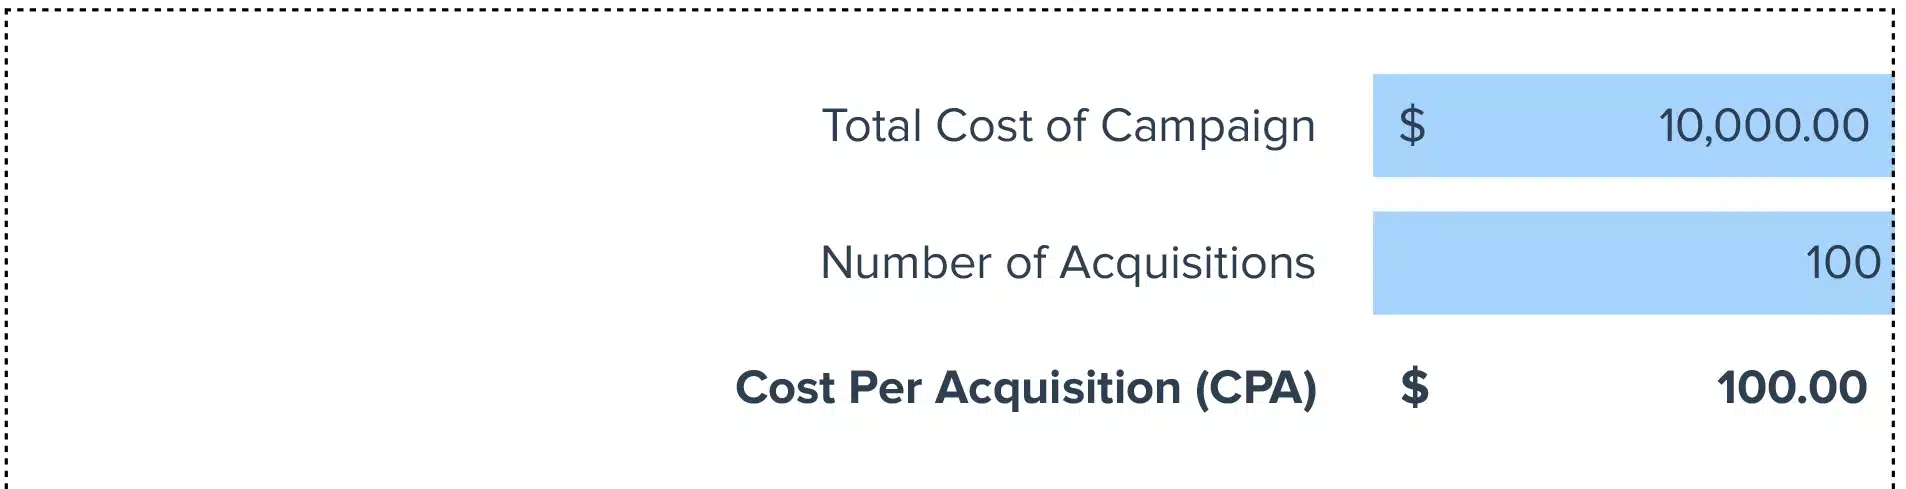 Cost Per Acquisition